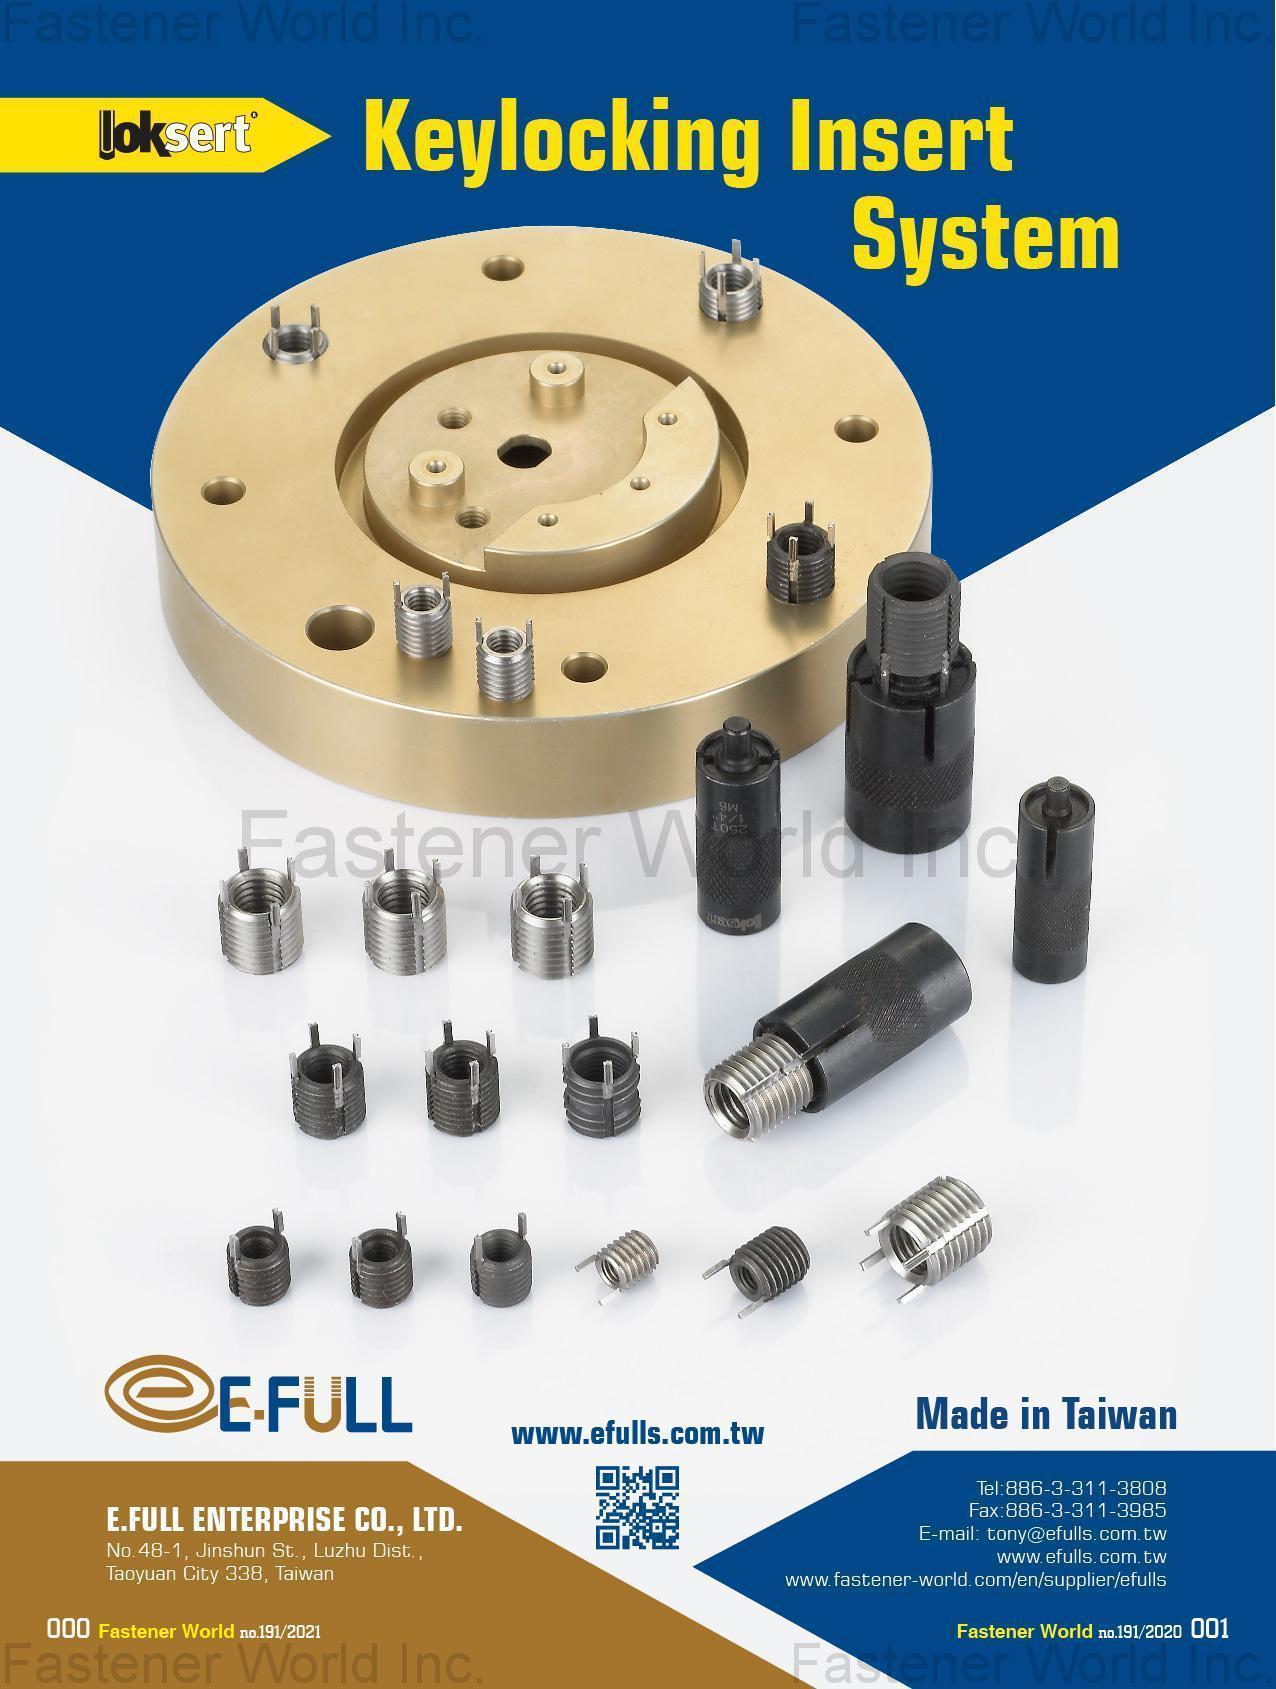 E.FULL ENTERPRISE CO., LTD. , Keylocking Insert System